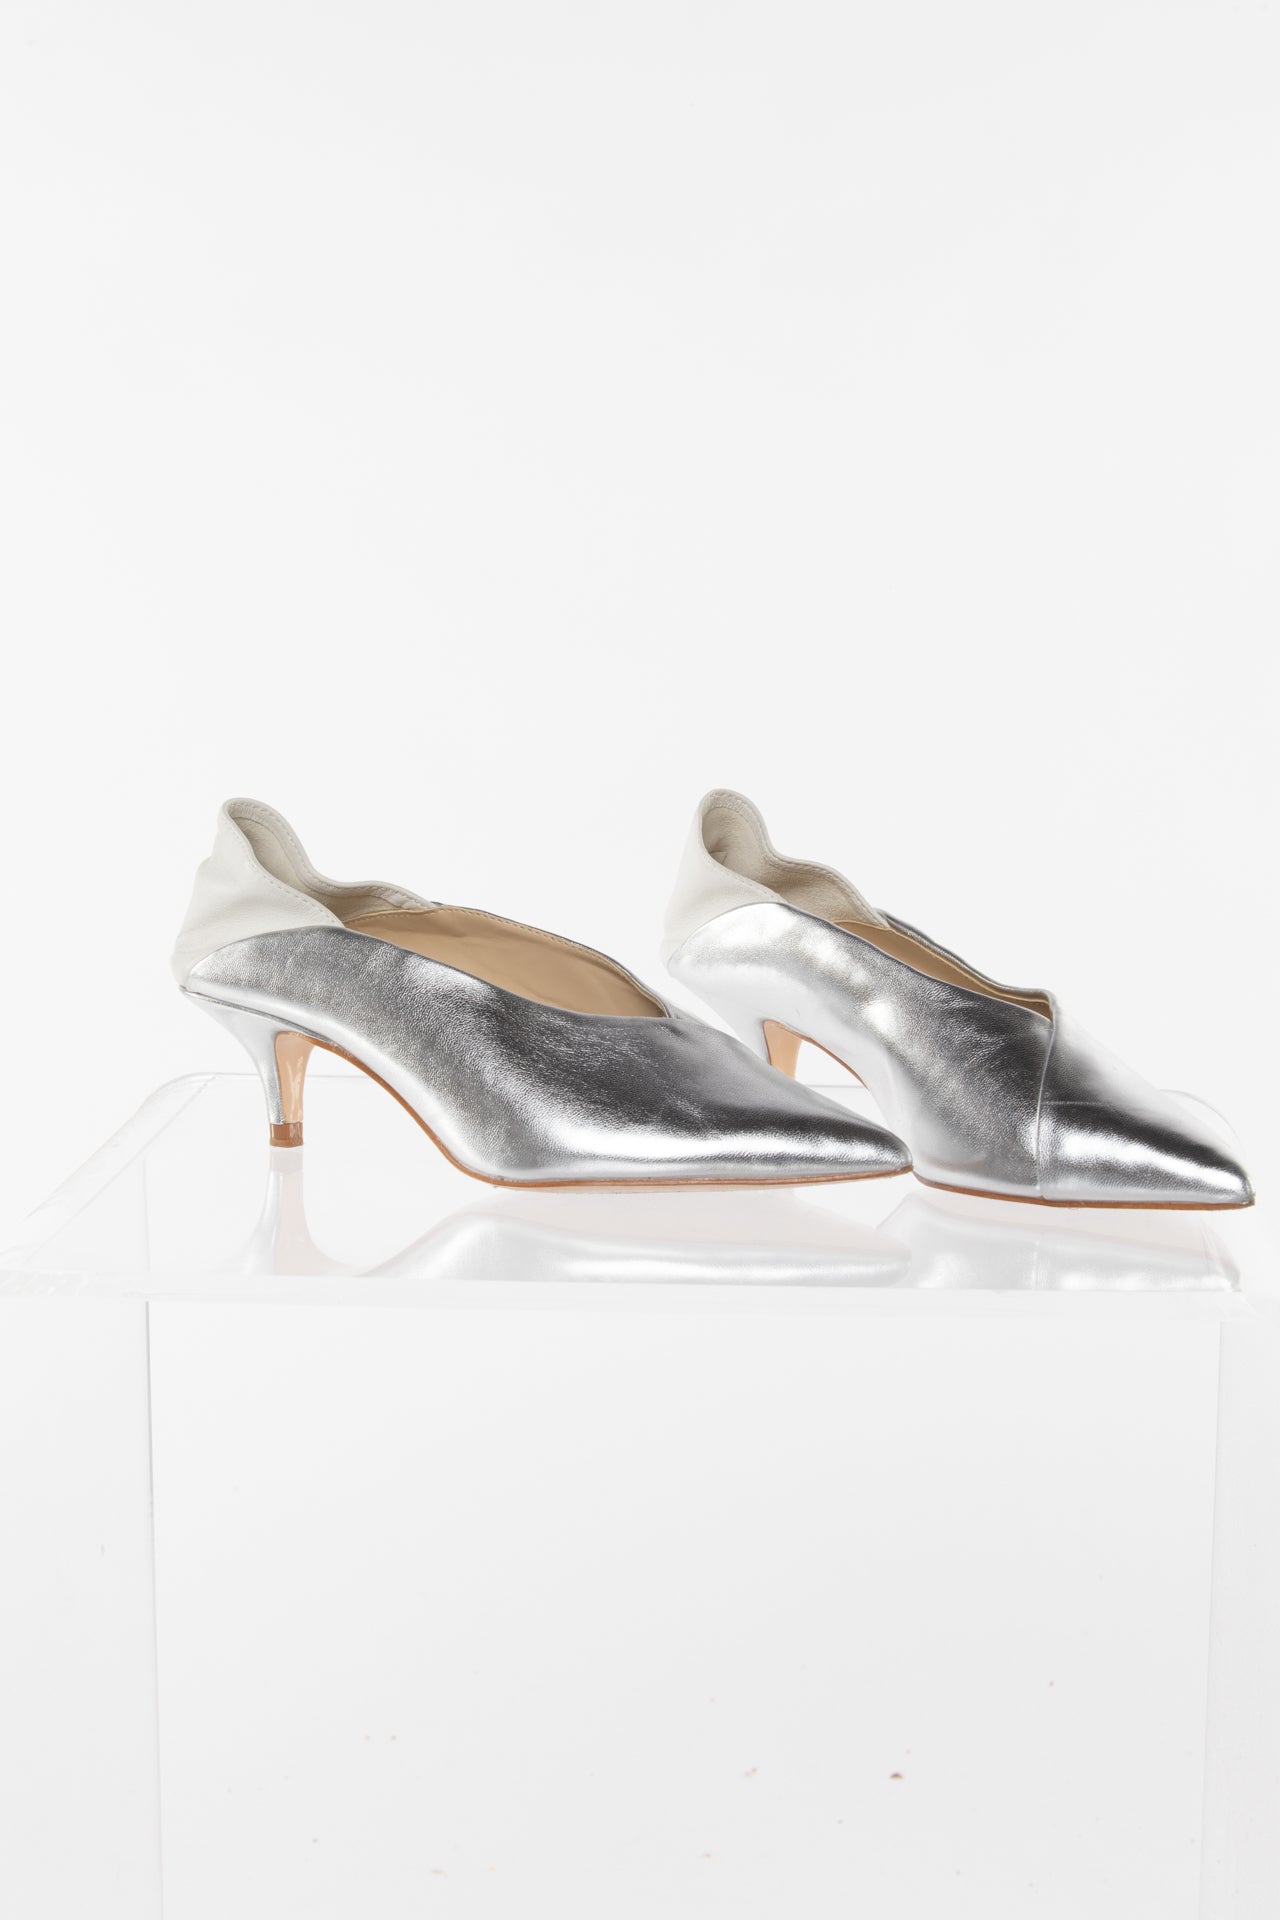 Silver Kitten Heel Shoes - Shop on Pinterest